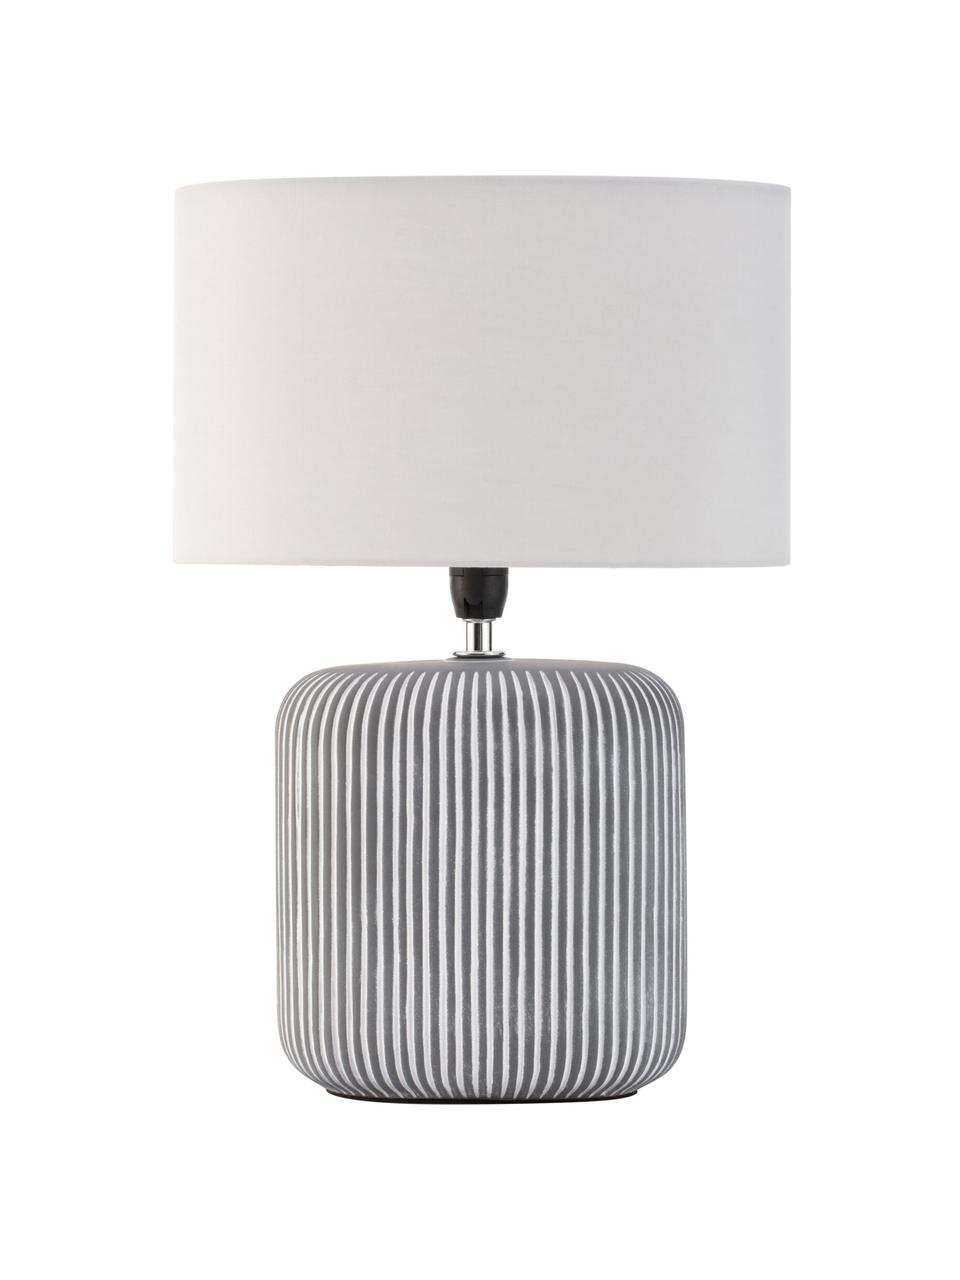 Gestreifte Ovale Keramik-Tischlampe Pure Shine, Lampenschirm: Stoff, Weiss, Grau, Schwarz, Ø 27 x H 38 cm